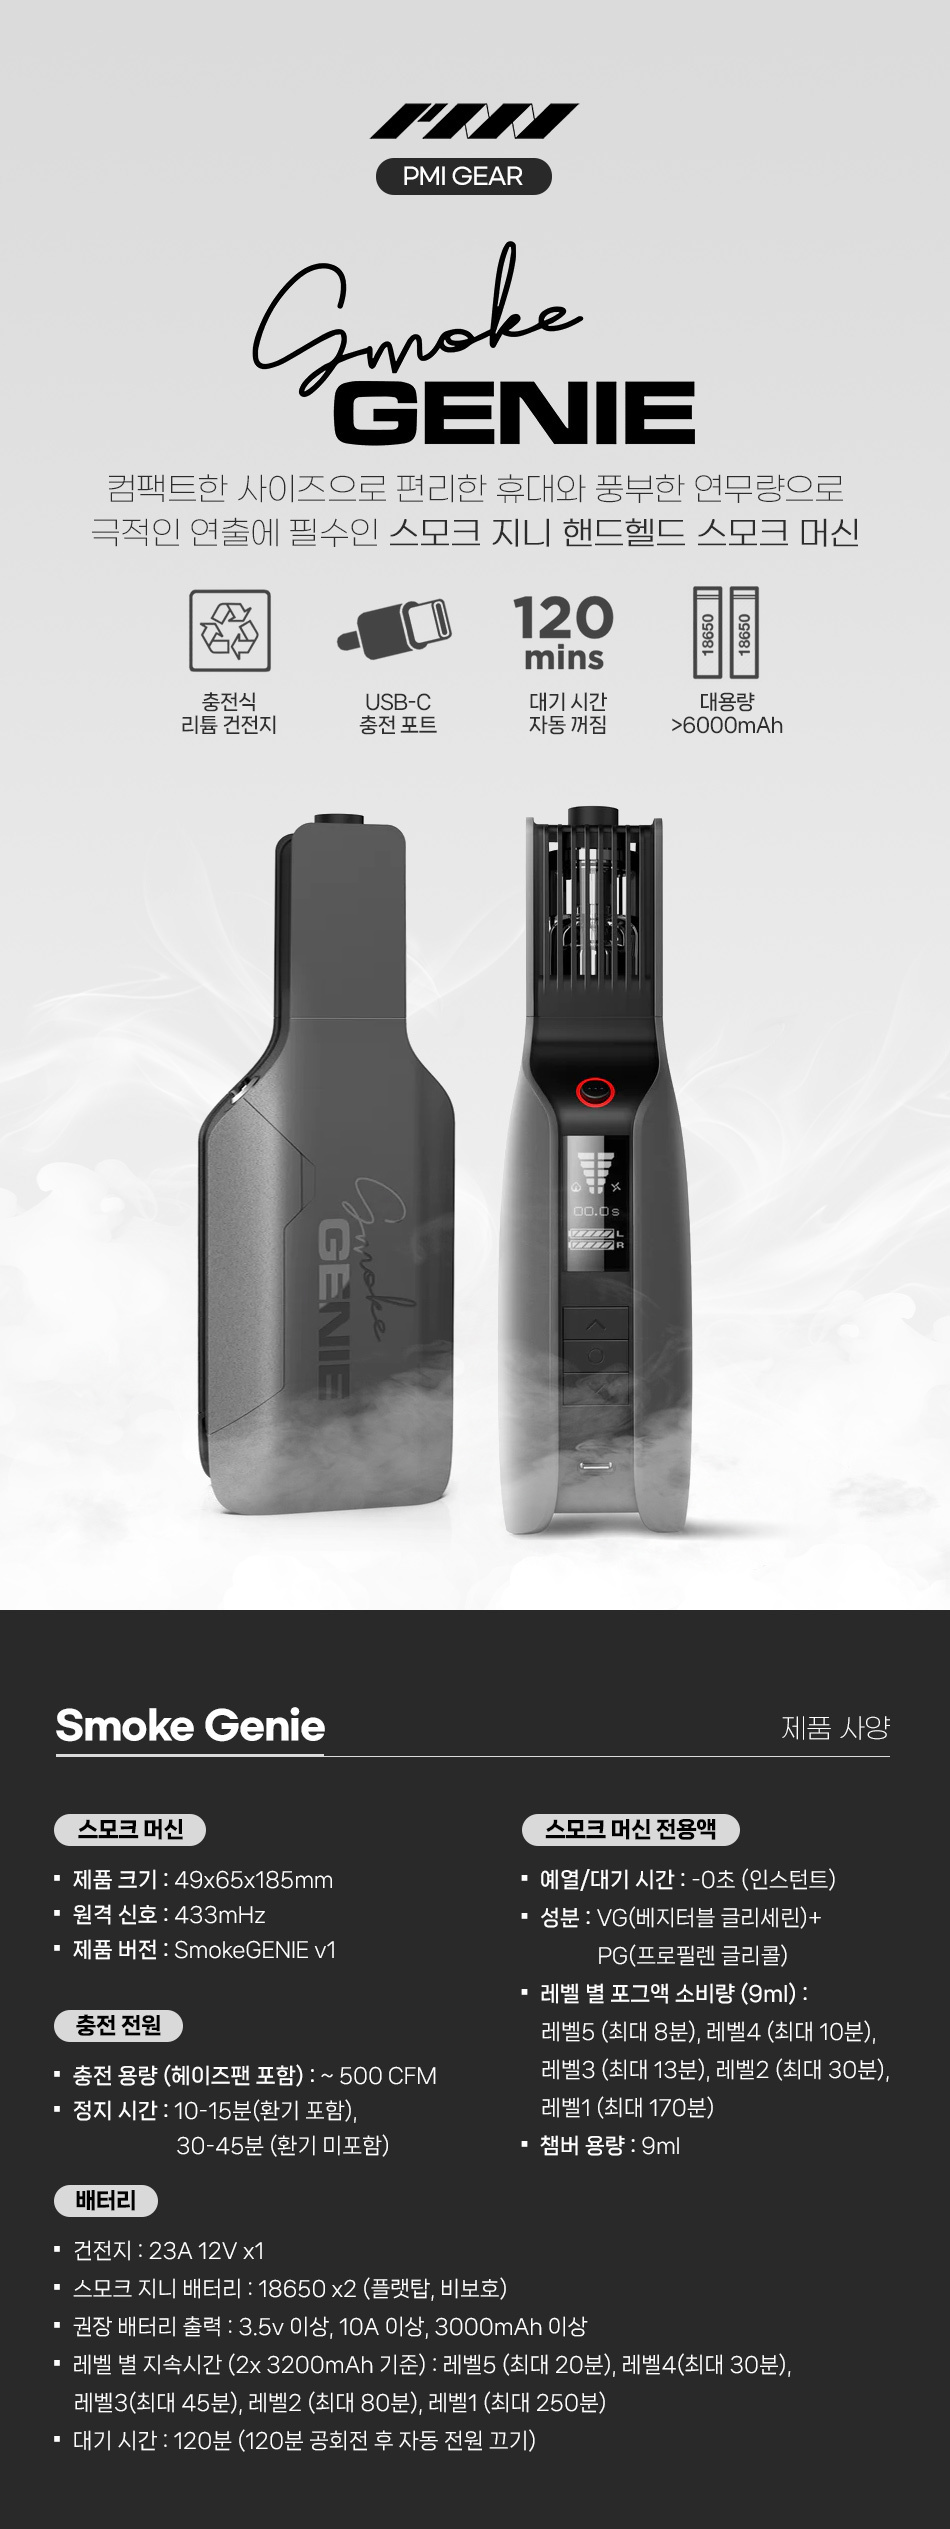 smoke_genie_01.jpg